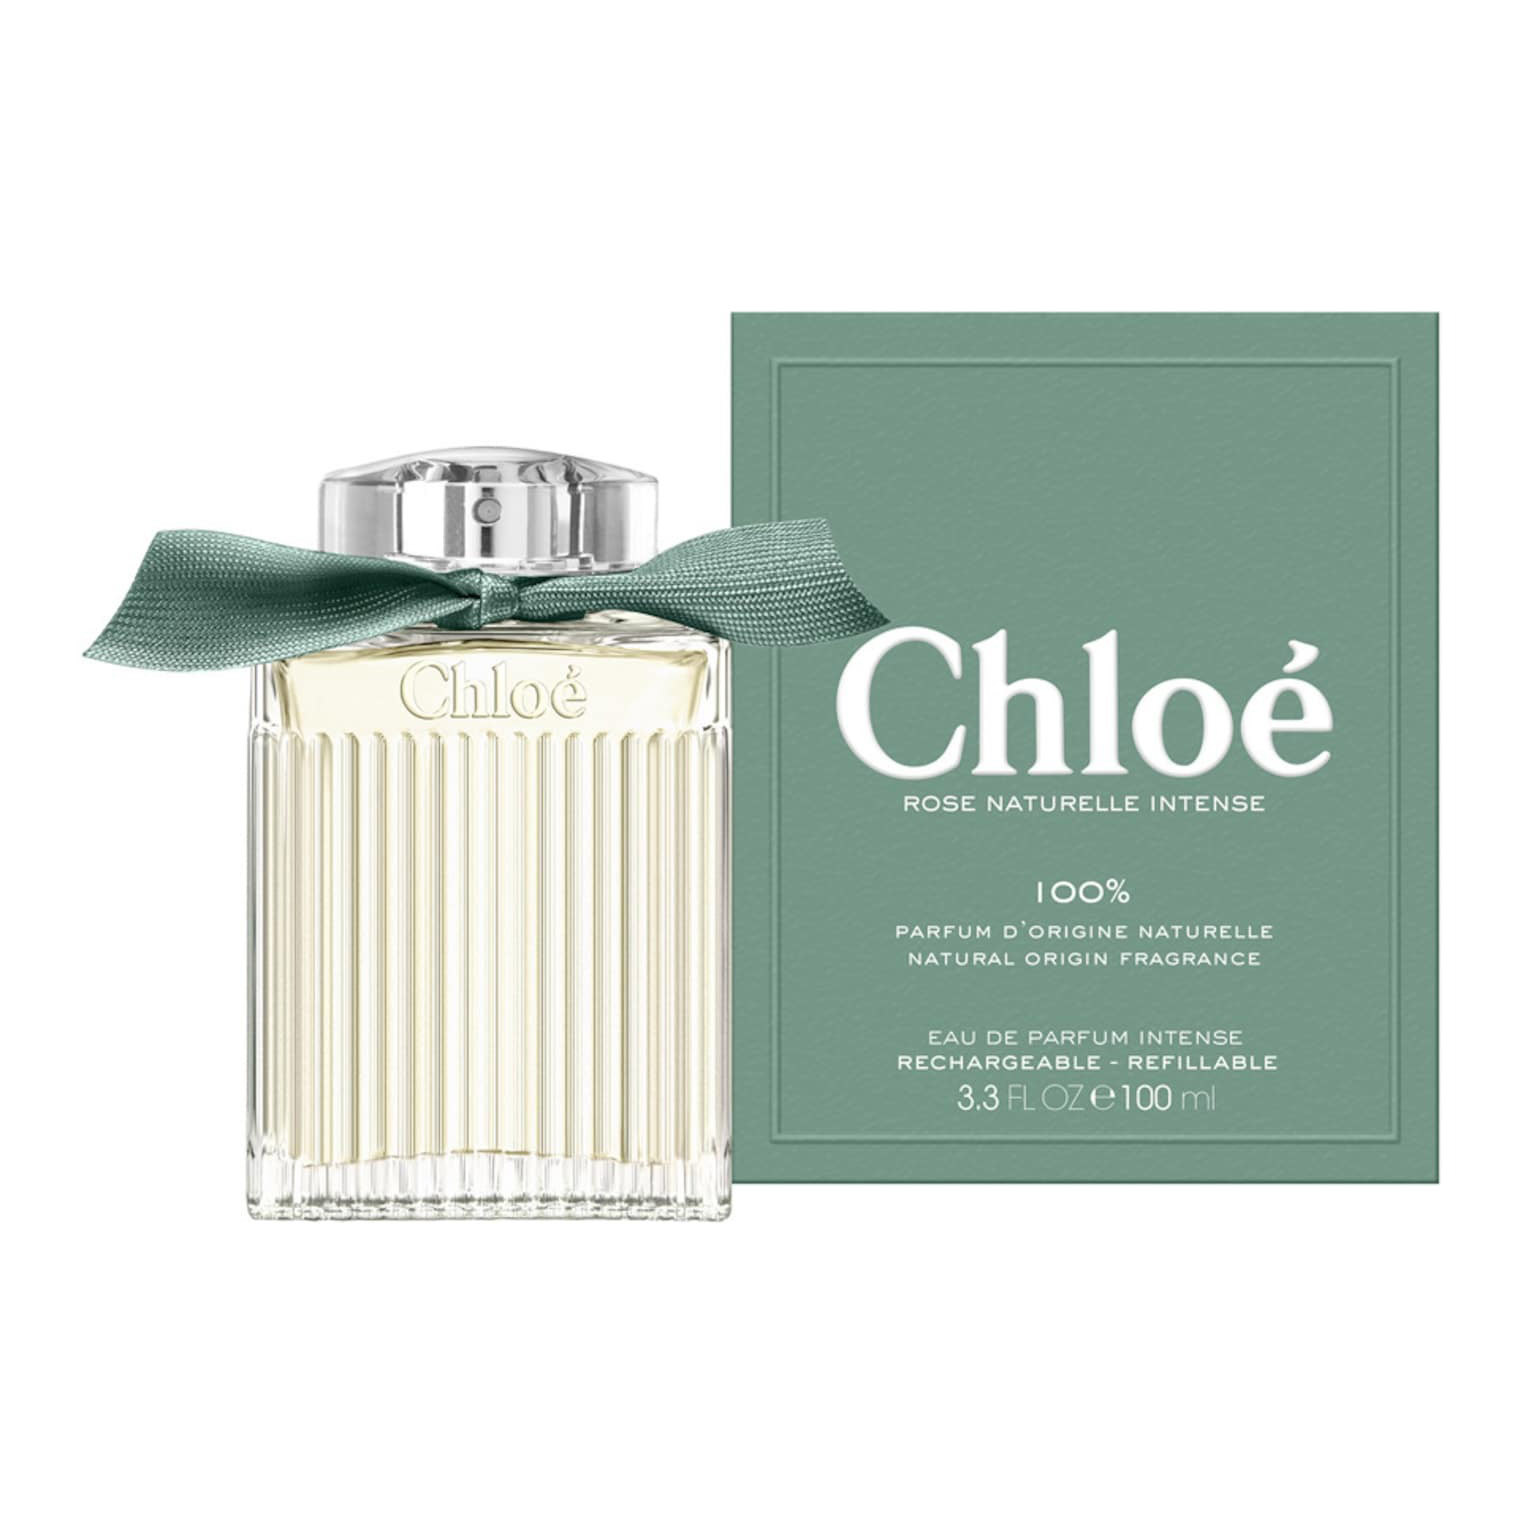 Парфюмерная вода Chloe Recargable Rose Naturelle Intense, 50 мл женская туалетная вода rose naturelle intense eau de parfum chloe 100